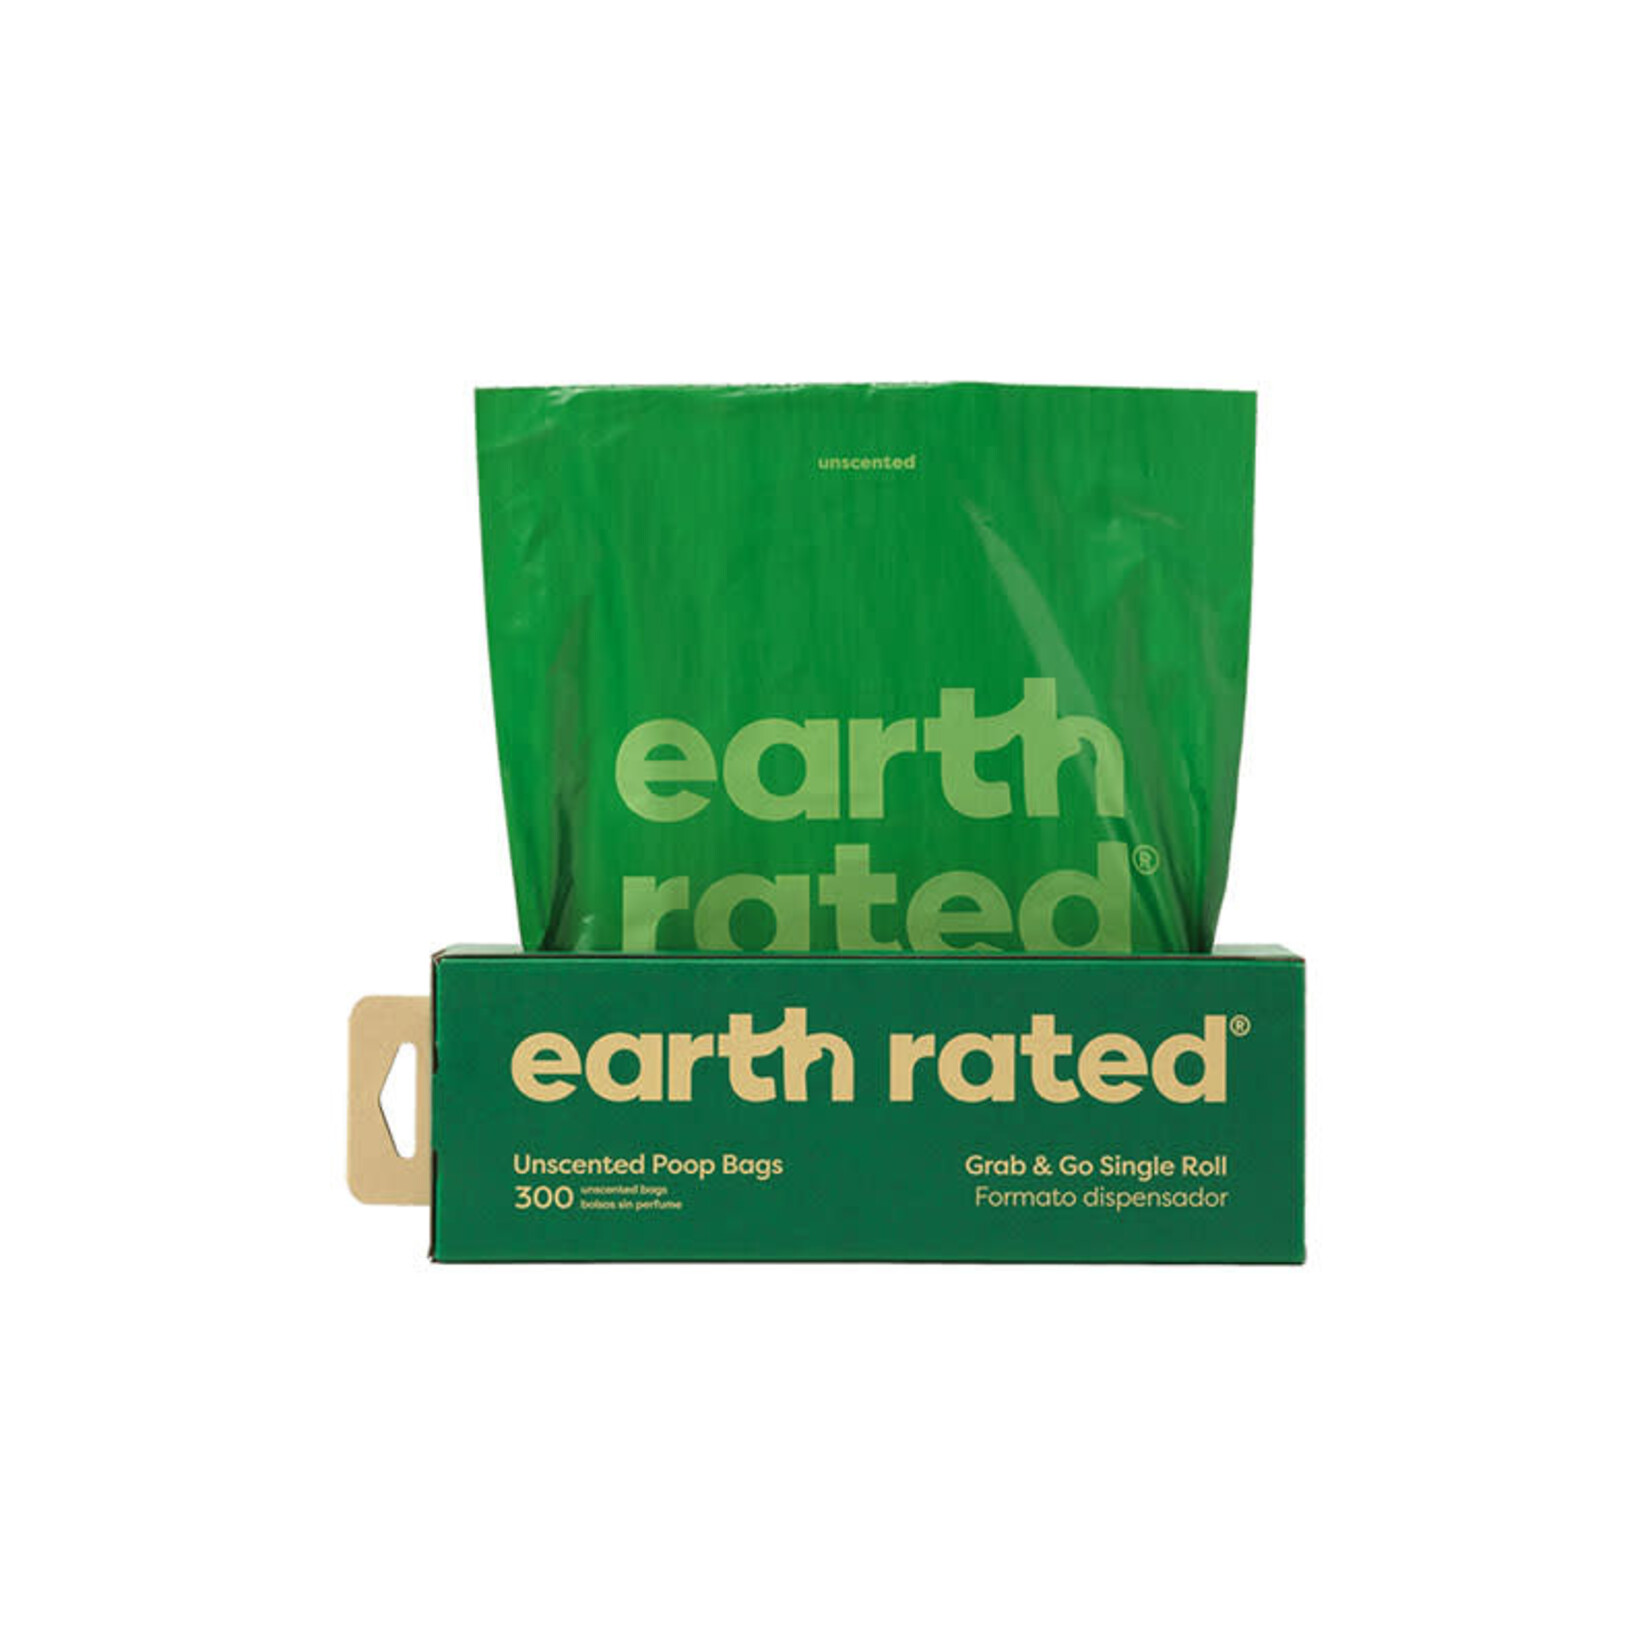 Earth Rated PoopBags Earth Rated Poopbags - Sacs sur un seul rouleau - Non parfumés  - 300 sacs